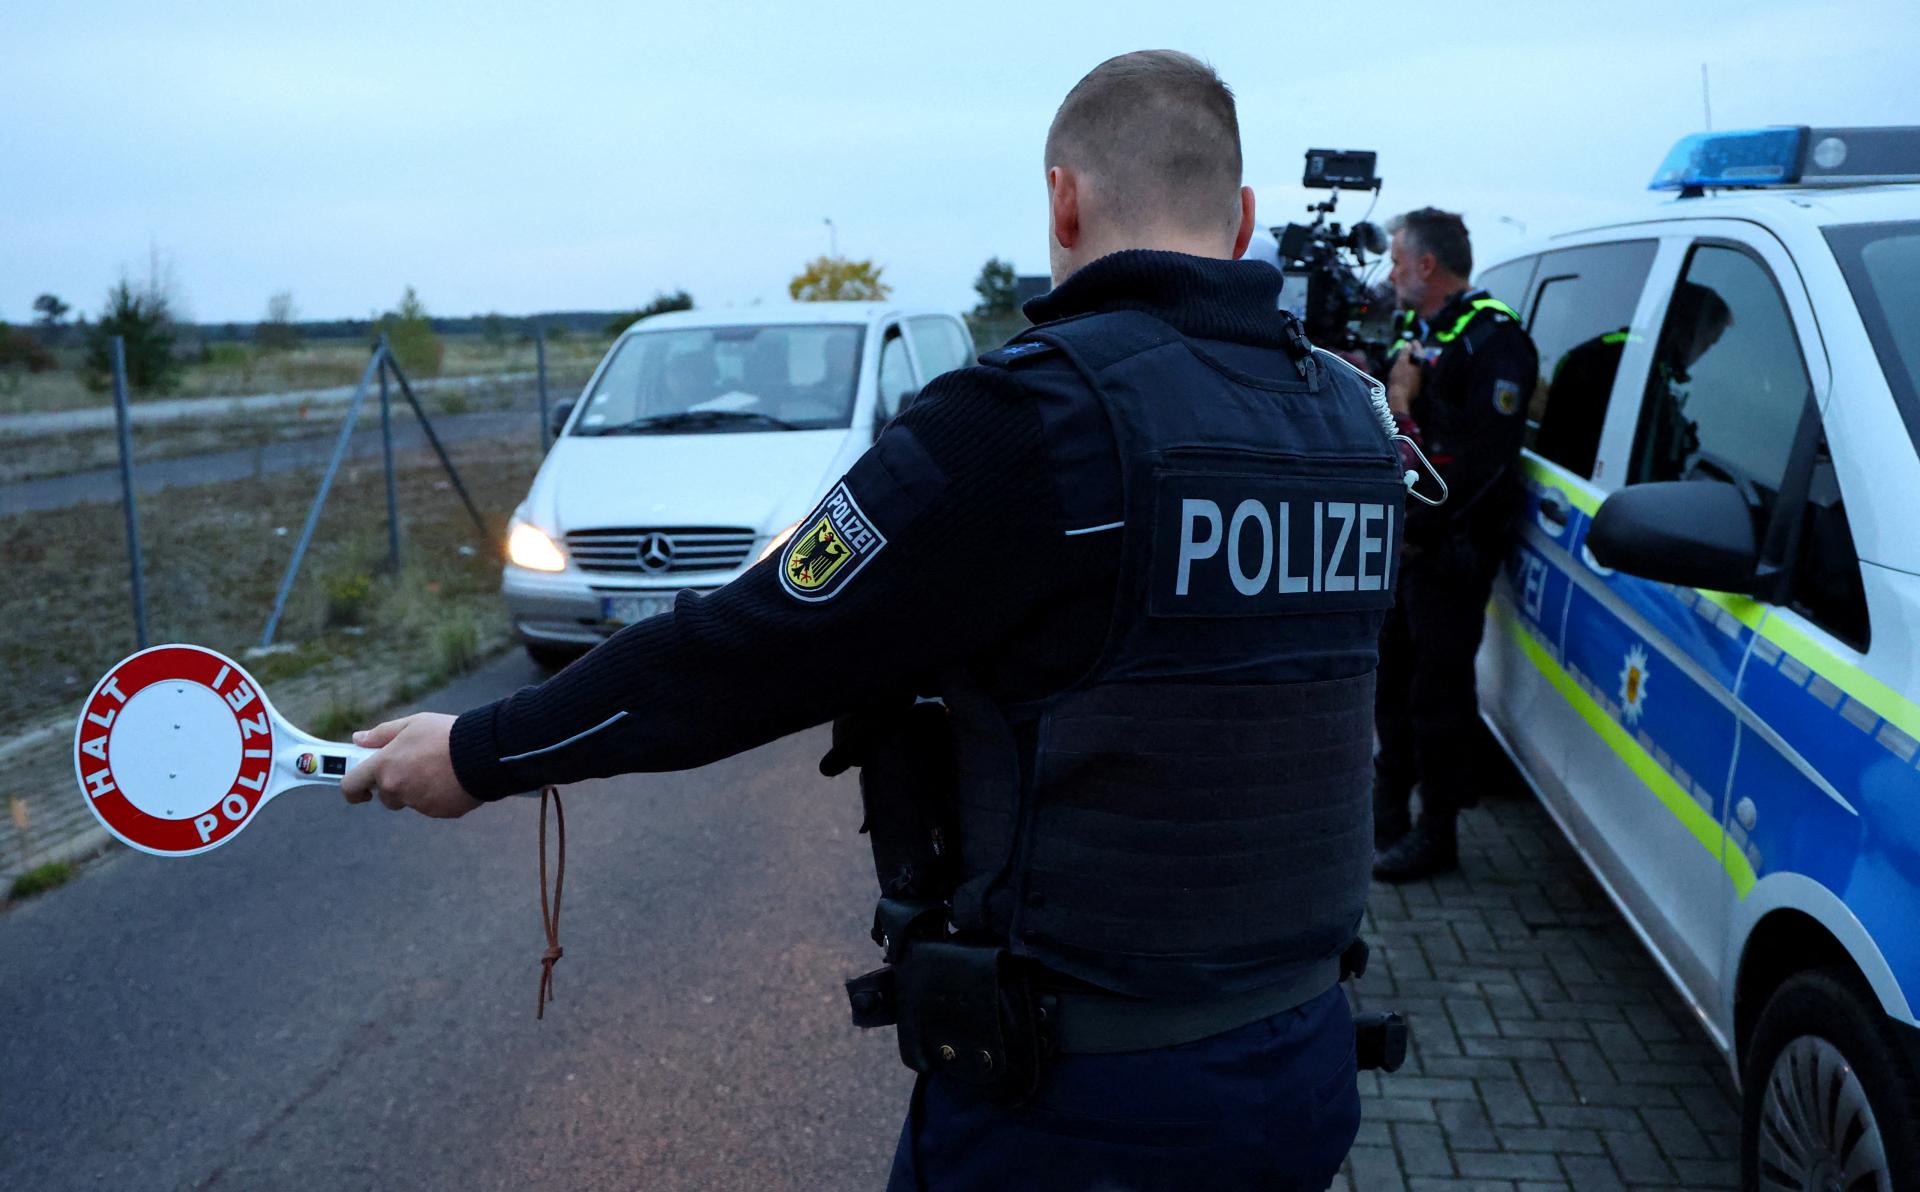 Nemecko predĺži kontroly na hraniciach s Poľskom, Českom a Švajčiarskom o dva mesiace